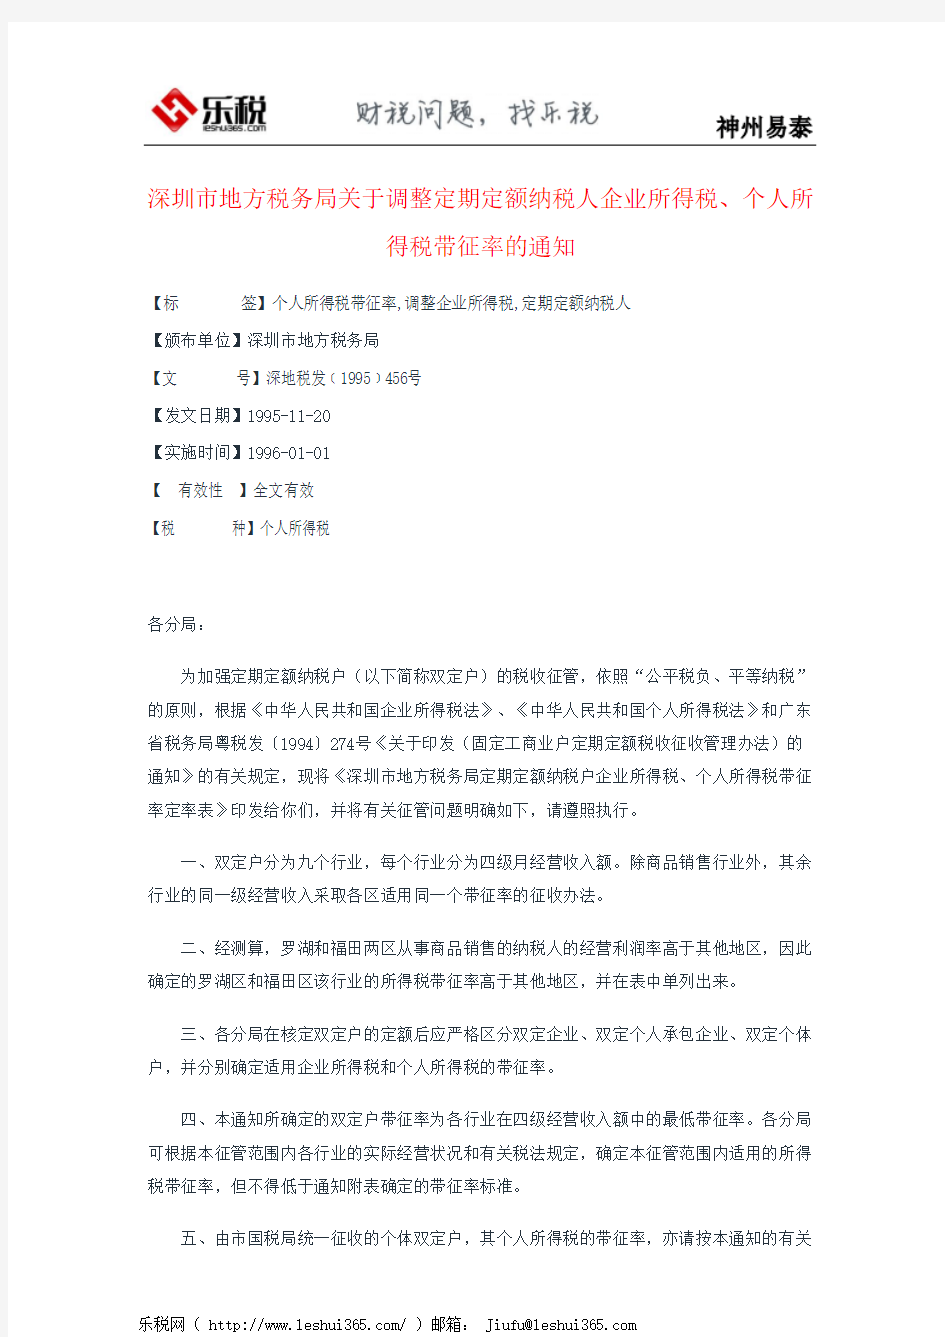 深圳市地方税务局关于调整定期定额纳税人企业所得税、个人所得税